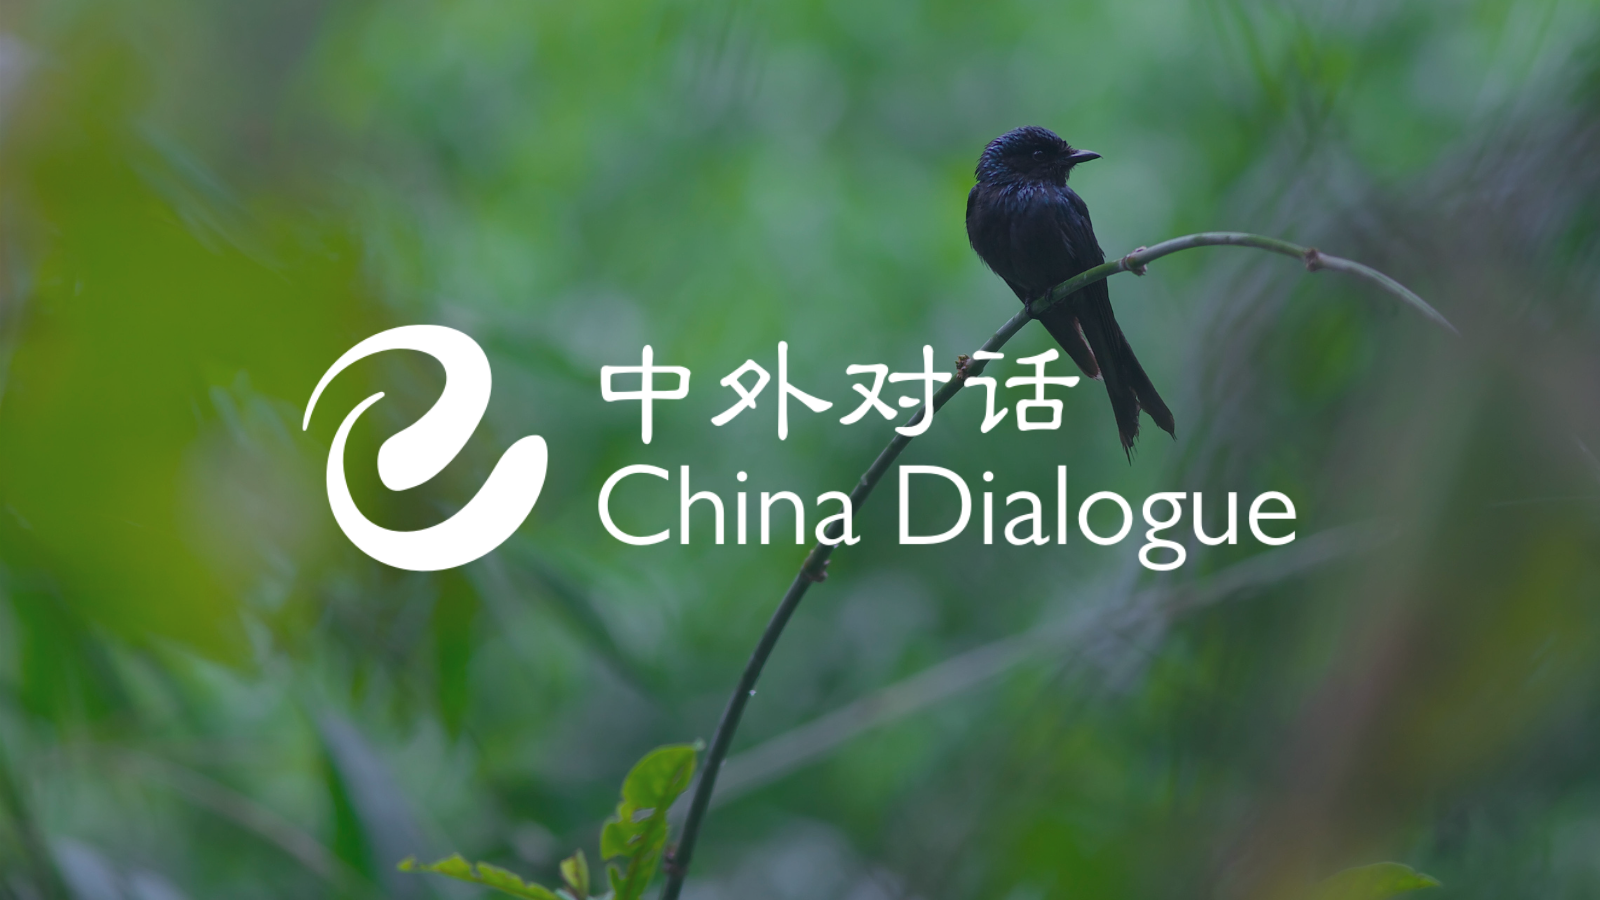 Tìm hiểu về môi trường và bảo vệ môi trường là điều cần thiết với mọi người. Với những tin tức môi trường cập nhật từ trang China Dialogue, chúng ta có thể hiểu hơn về tình trạng môi trường đang diễn ra tại Trung Quốc và thế giới. Hãy cùng khám phá những tin tức môi trường tuyệt vời này trong video liên quan nhé!